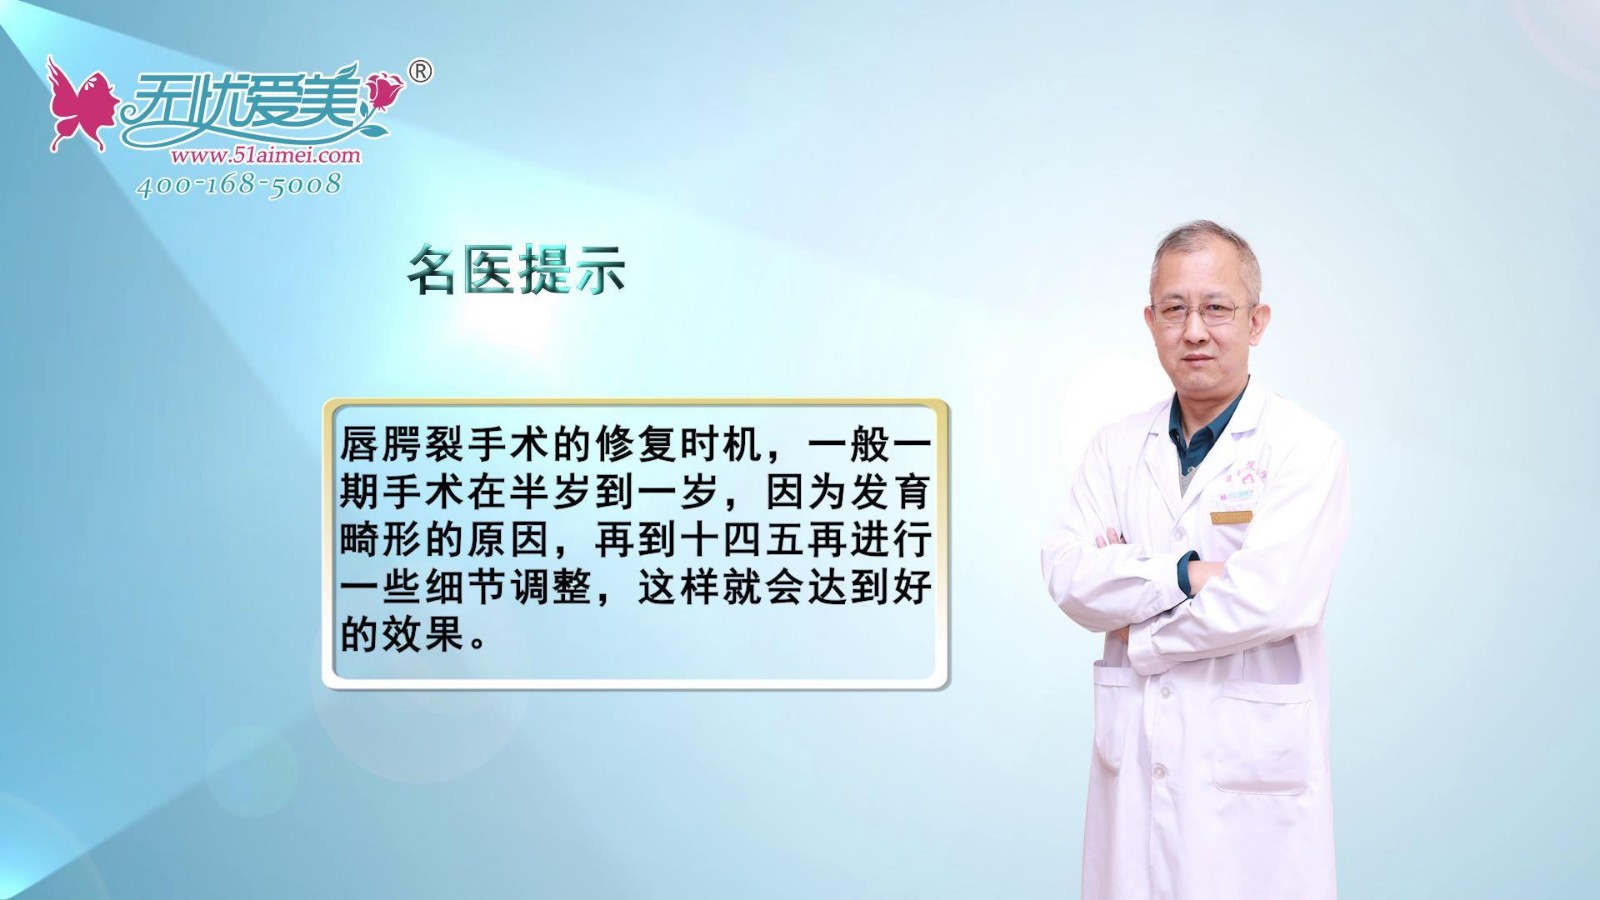 山西整形外科医院刘晋元院长介绍唇腭裂手术的修复时机